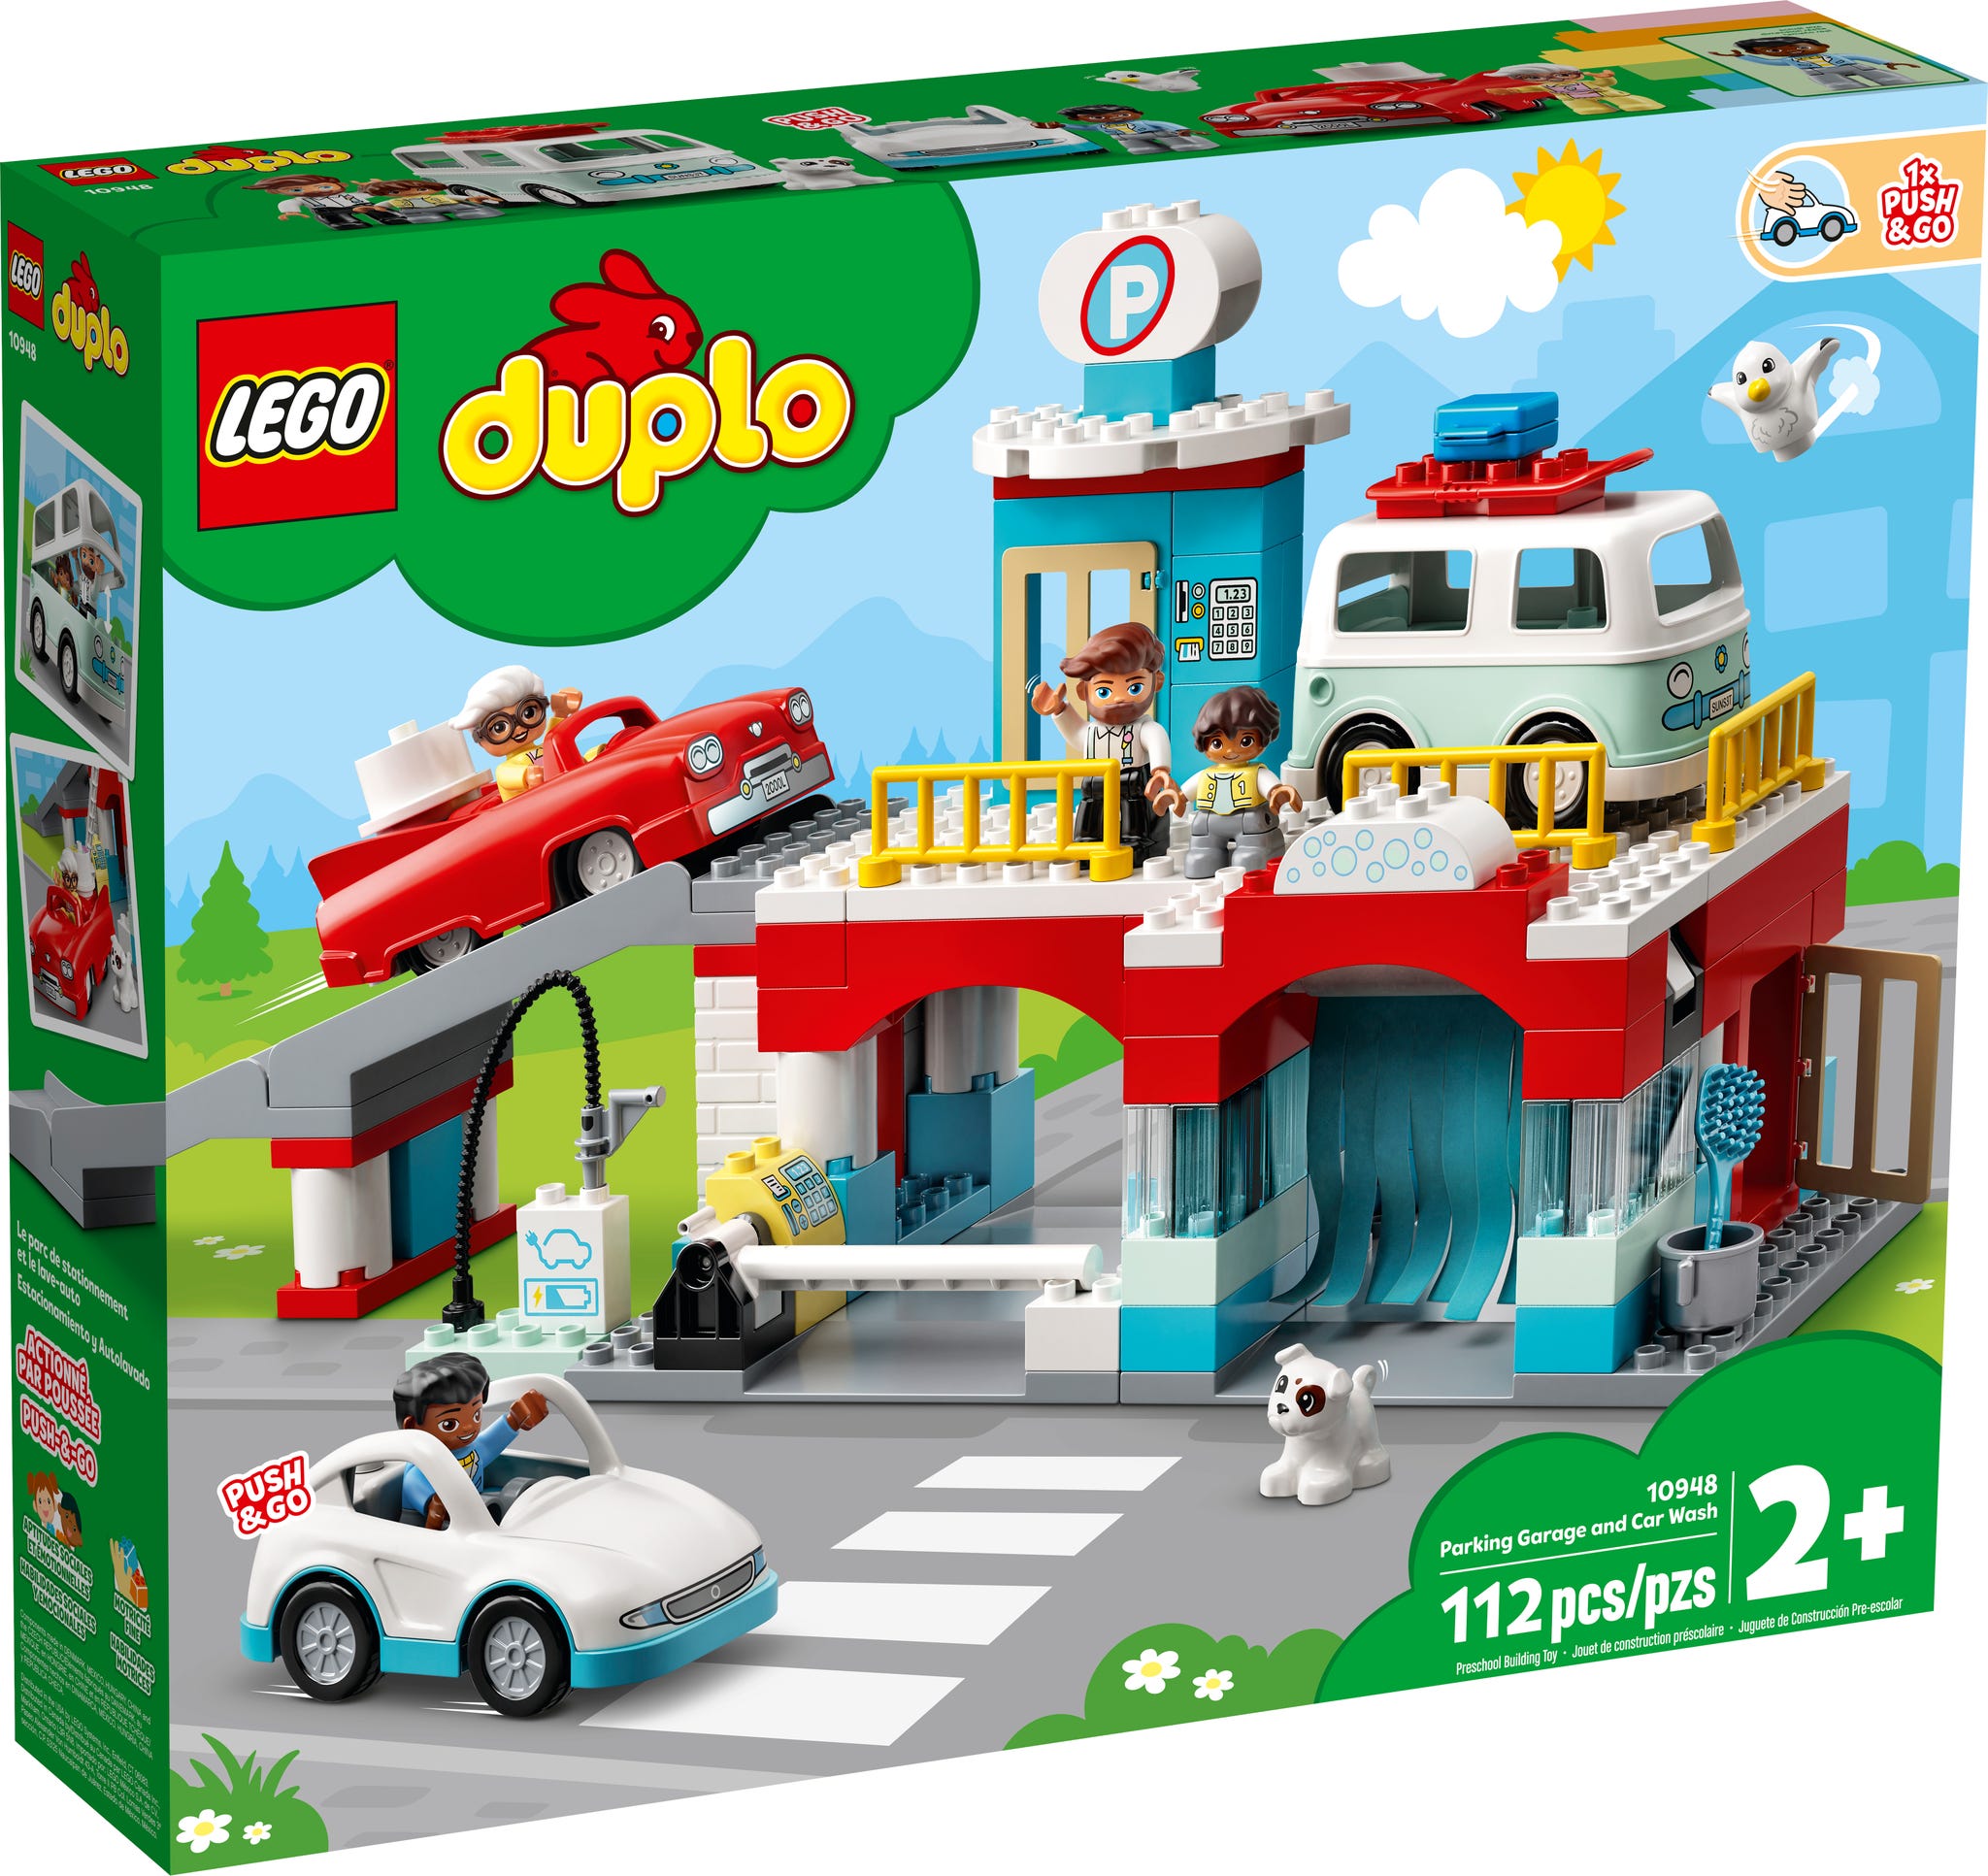 LEGO Duplo Parkhaus mit Autowaschanlage (10948) - im GOLDSTIEN.SHOP verfügbar mit Gratisversand ab Schweizer Lager! (5702016911329)